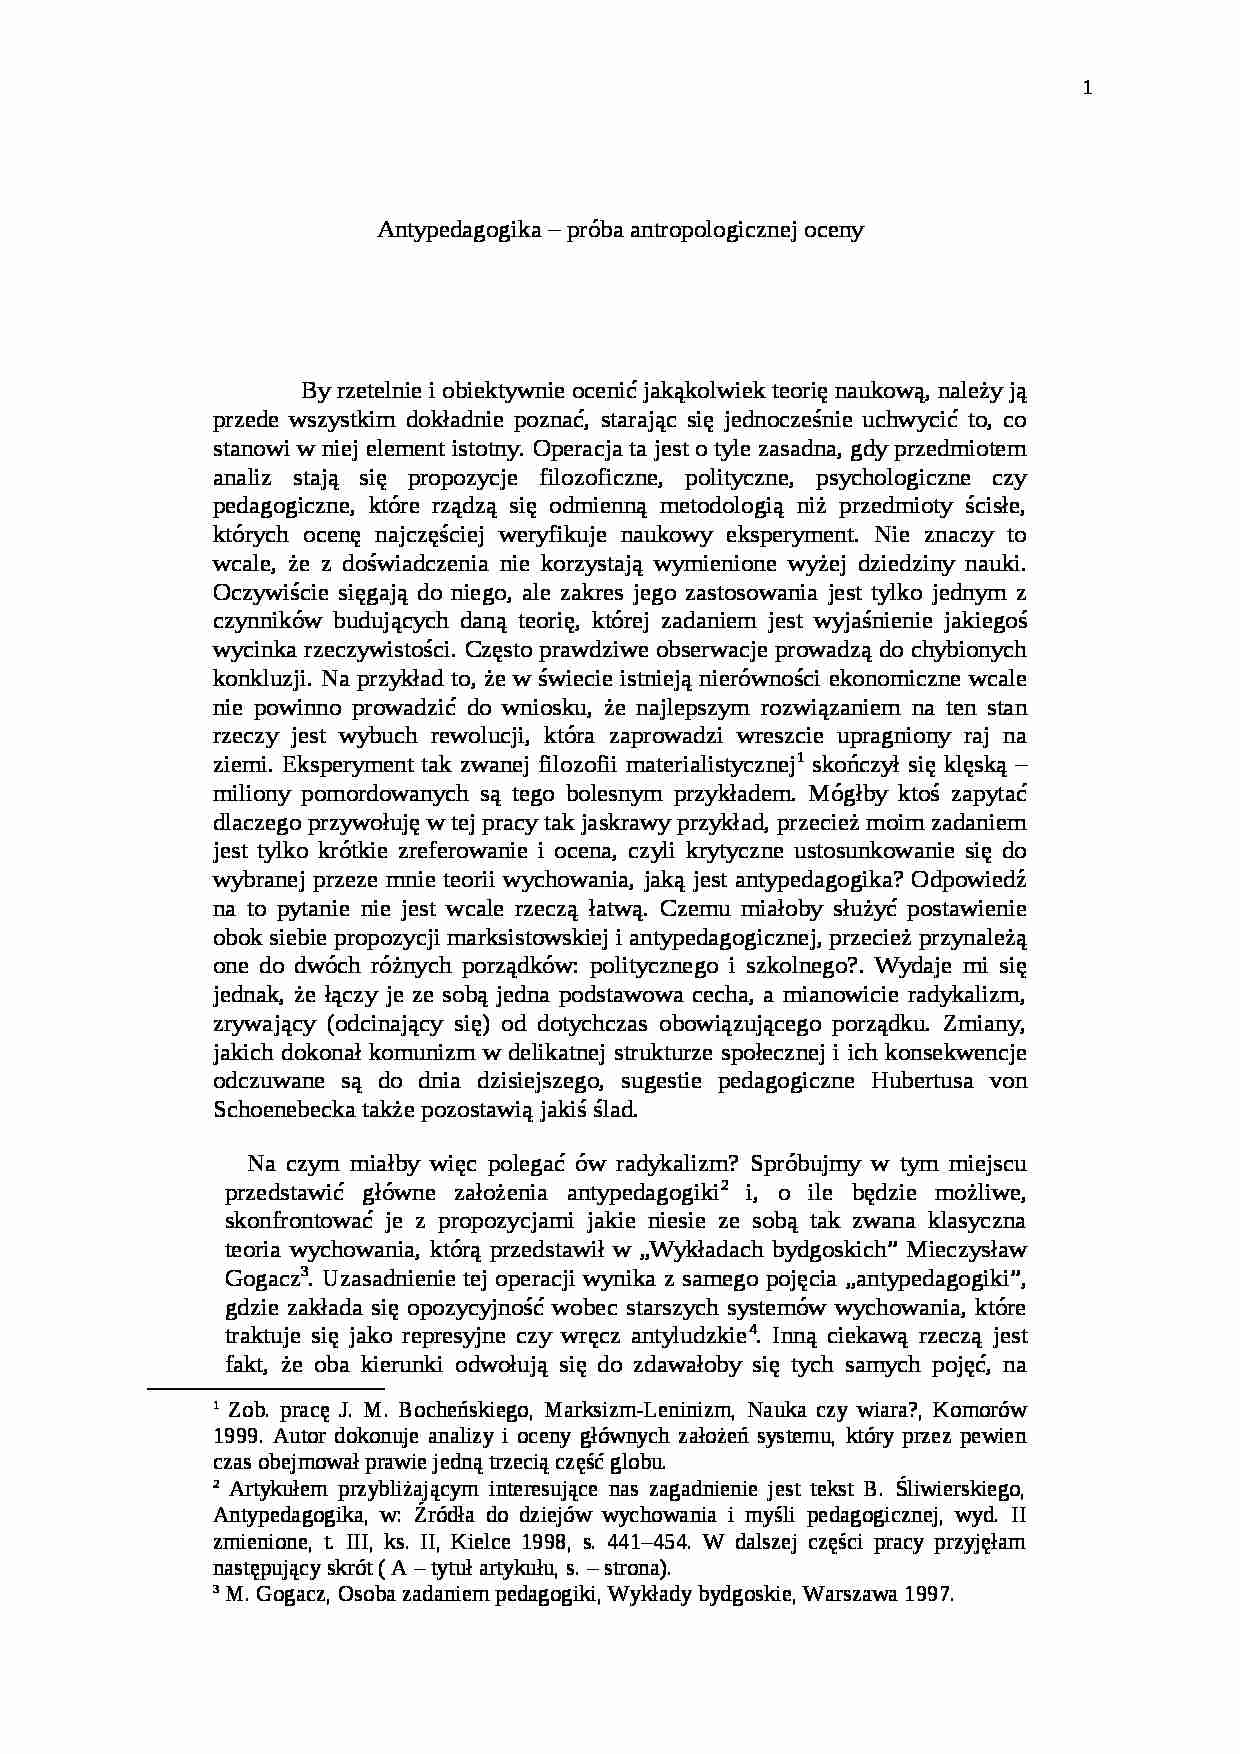 Antypedagogika - próba antropologicznej oceny - strona 1